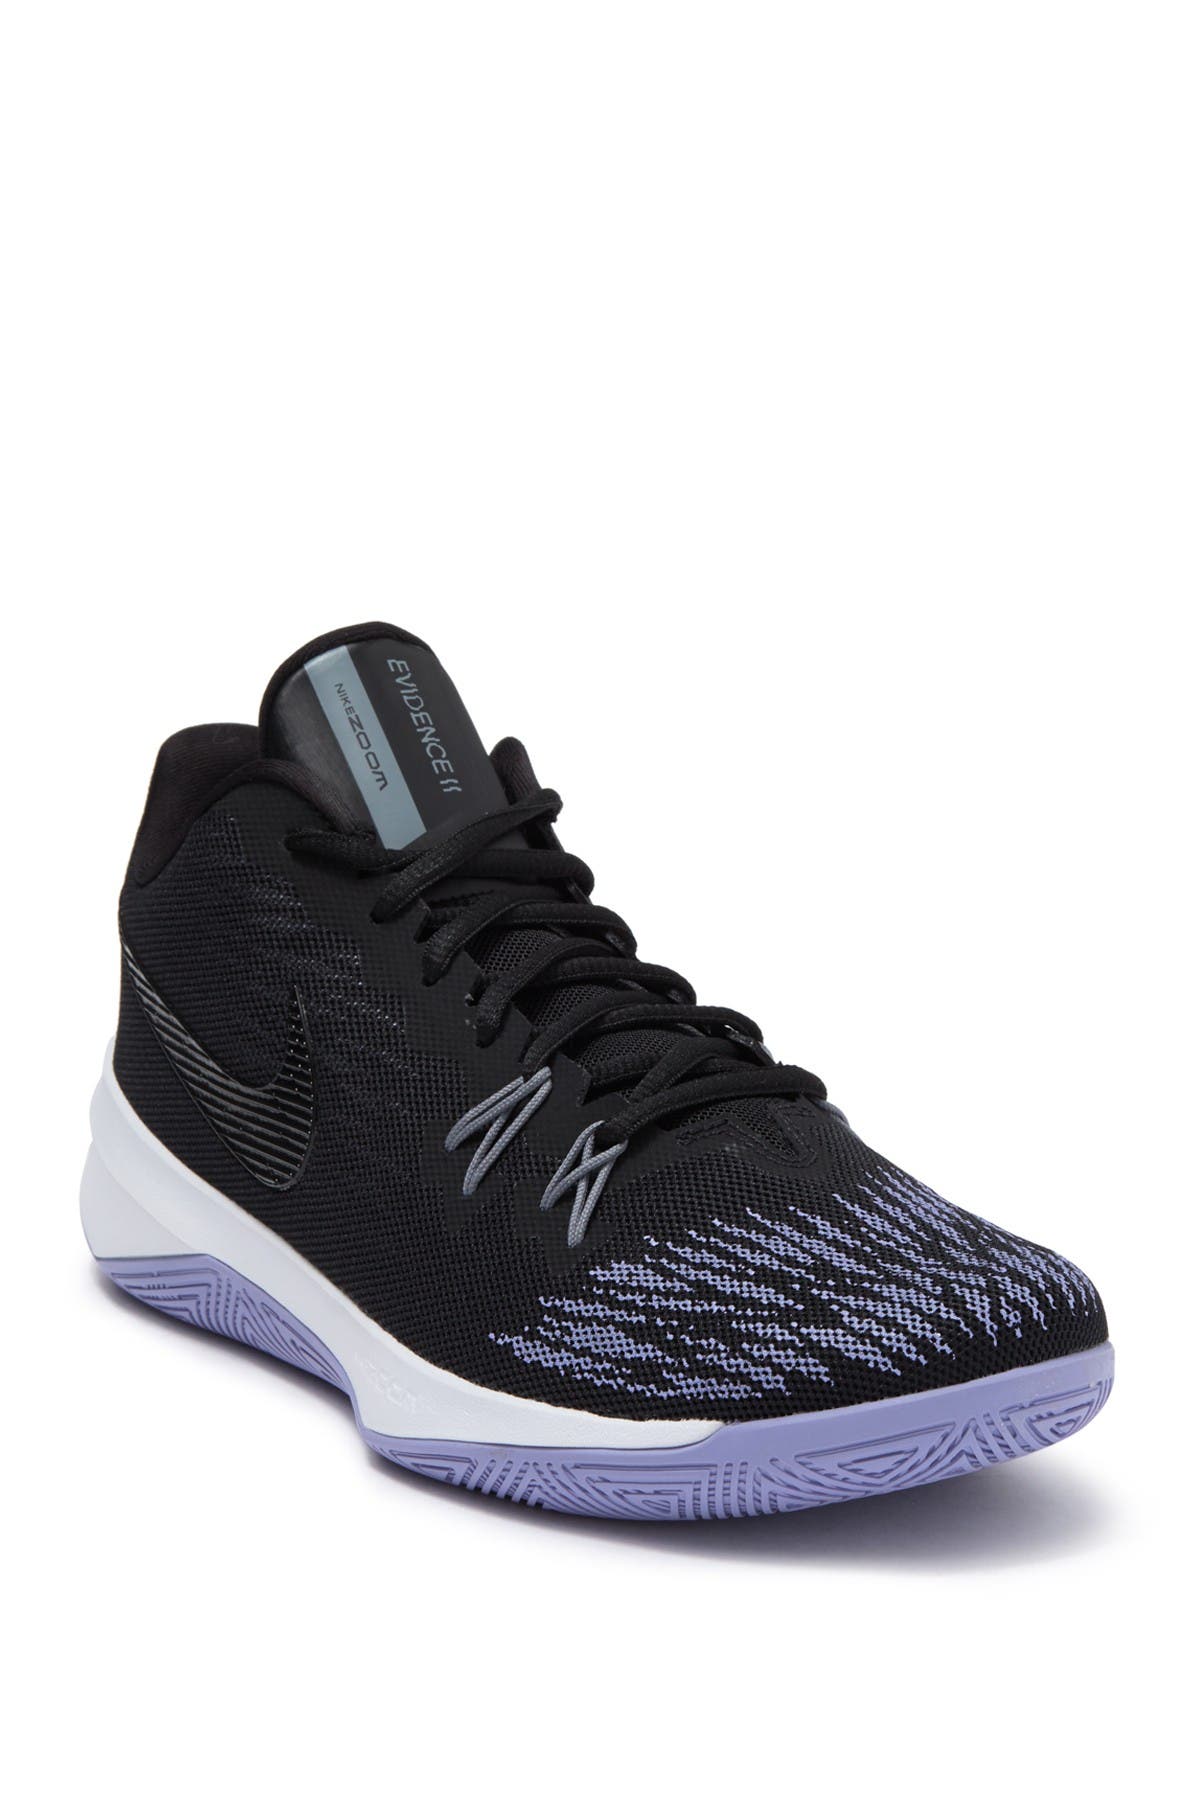 Nike | Zoom Evidence II Basketball Shoe 